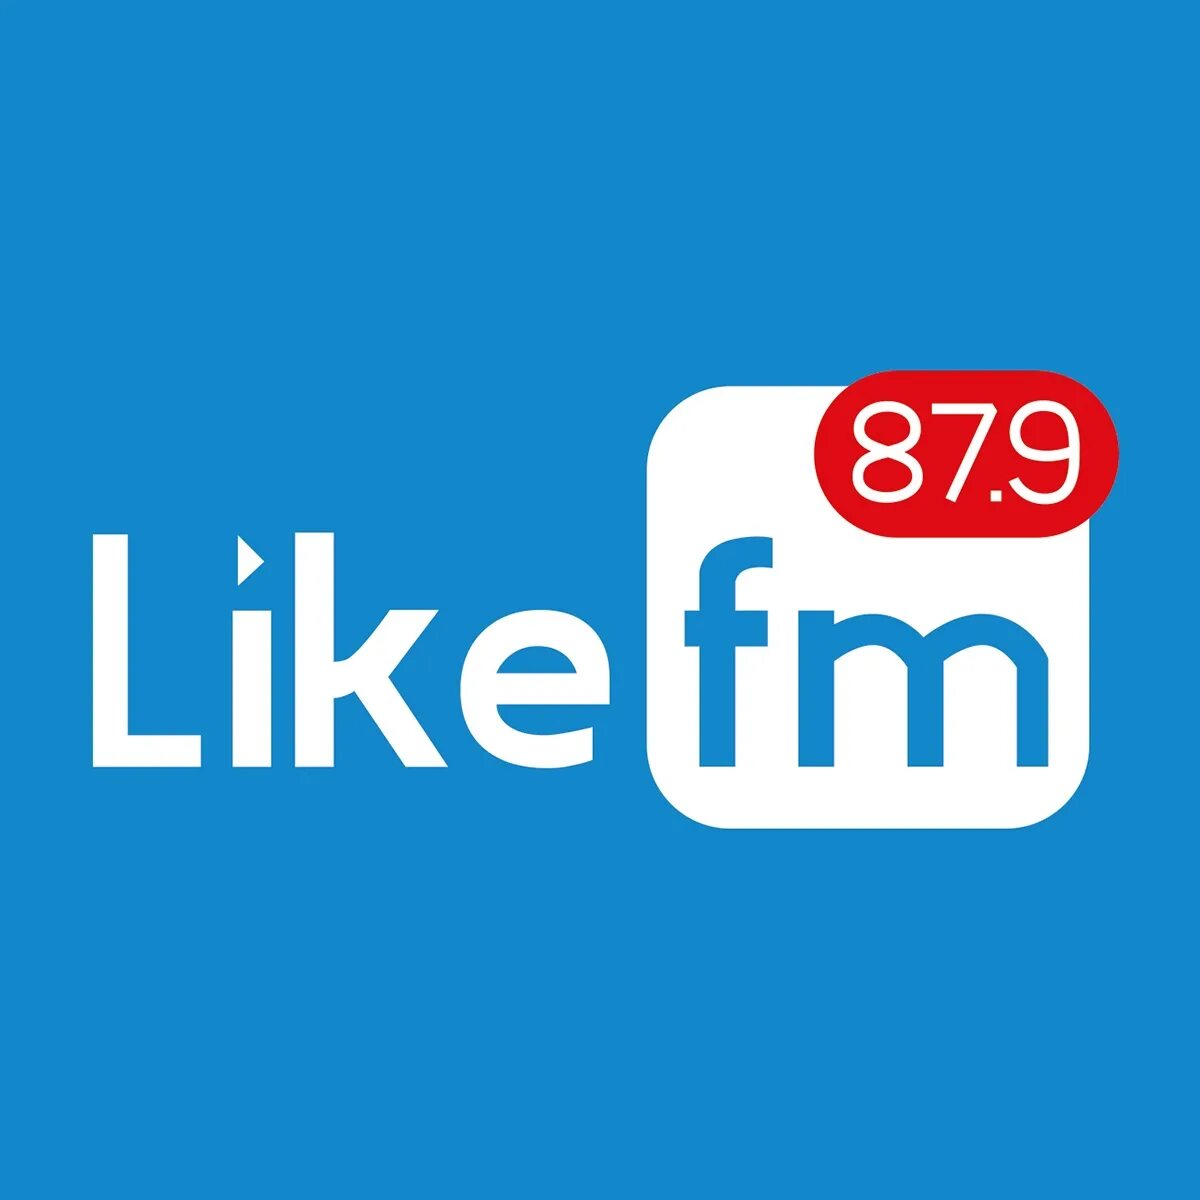 Лайк ФМ. Like fm логотип. Радиостанции лайк ФМ. Like fm 87.9.